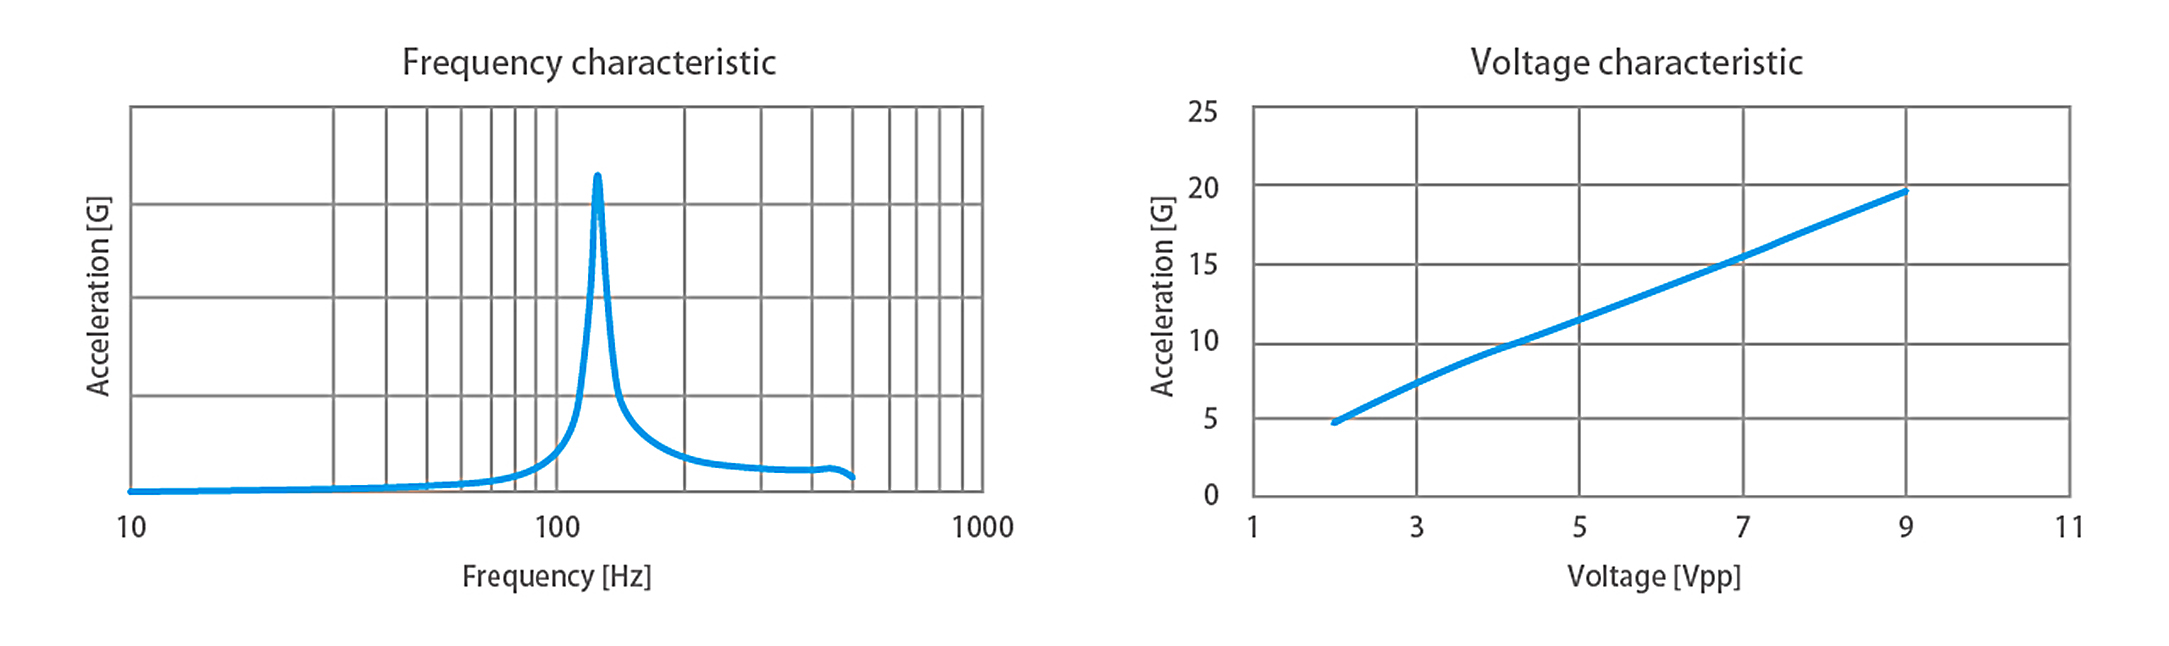 Afbeelding 3. Frequentie- en spanningskarakteristieken van de HAPTIC Reactor Heavy Type.